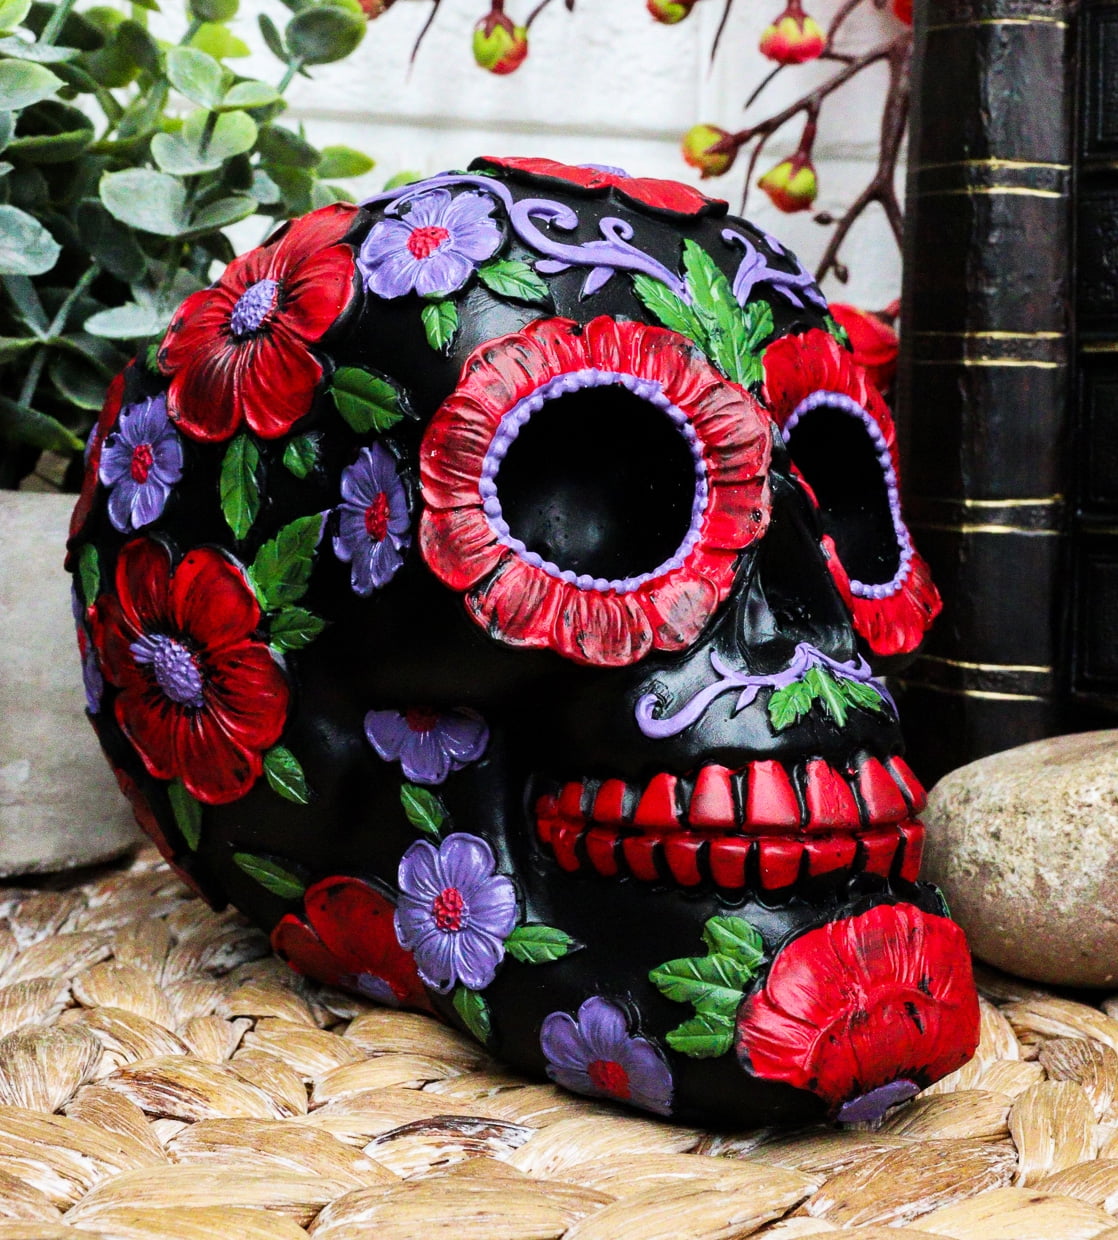 Ebros Black Day of The Dead Floral Blooms Sugar Skull Figurine DOD Skulls  6 L 